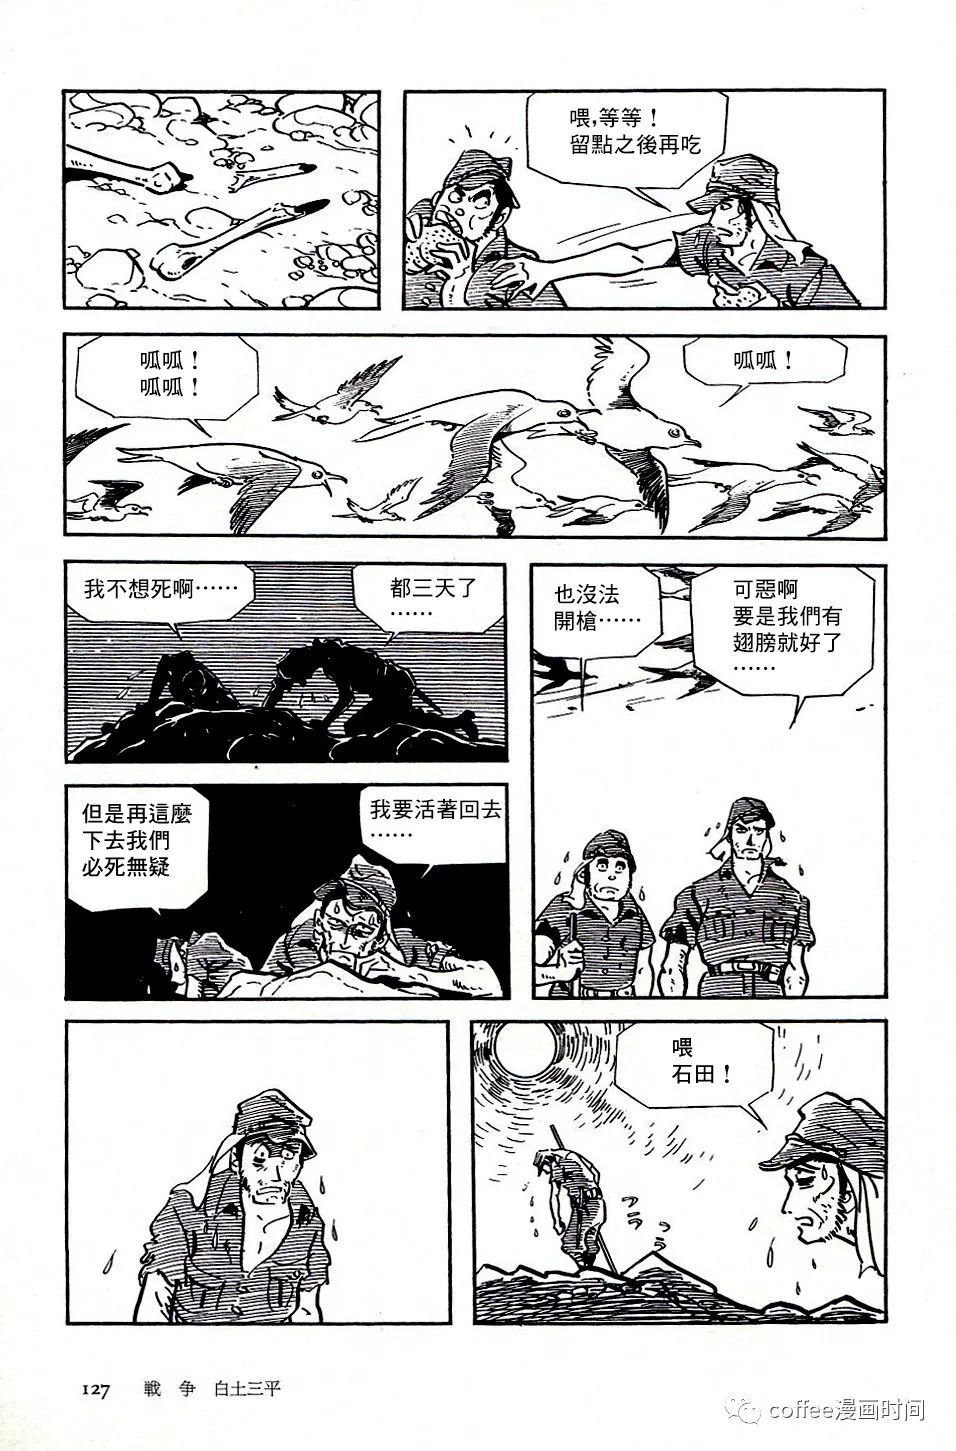 日本短篇漫畫傑作集 - 白土三平《戰爭》 - 3